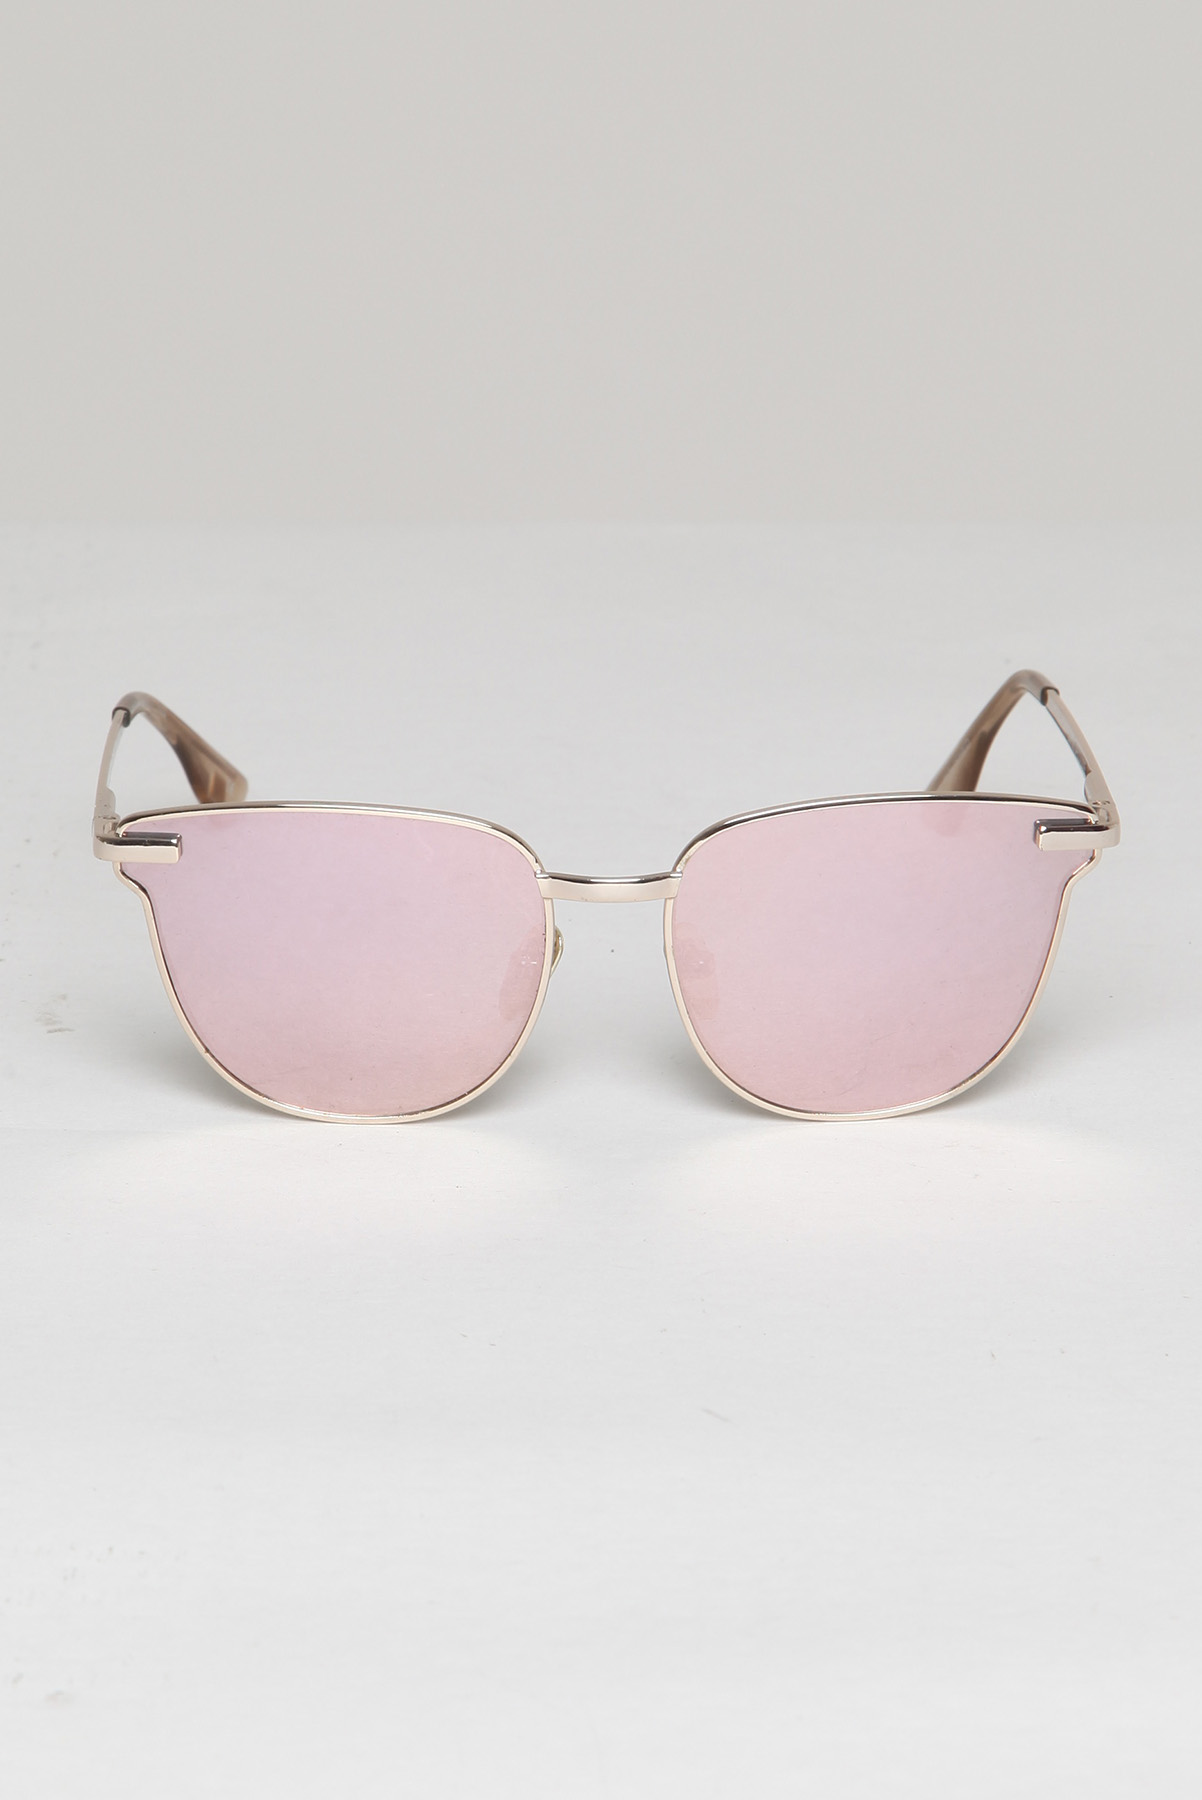 Óculos Le Specs Metalizado Prateado